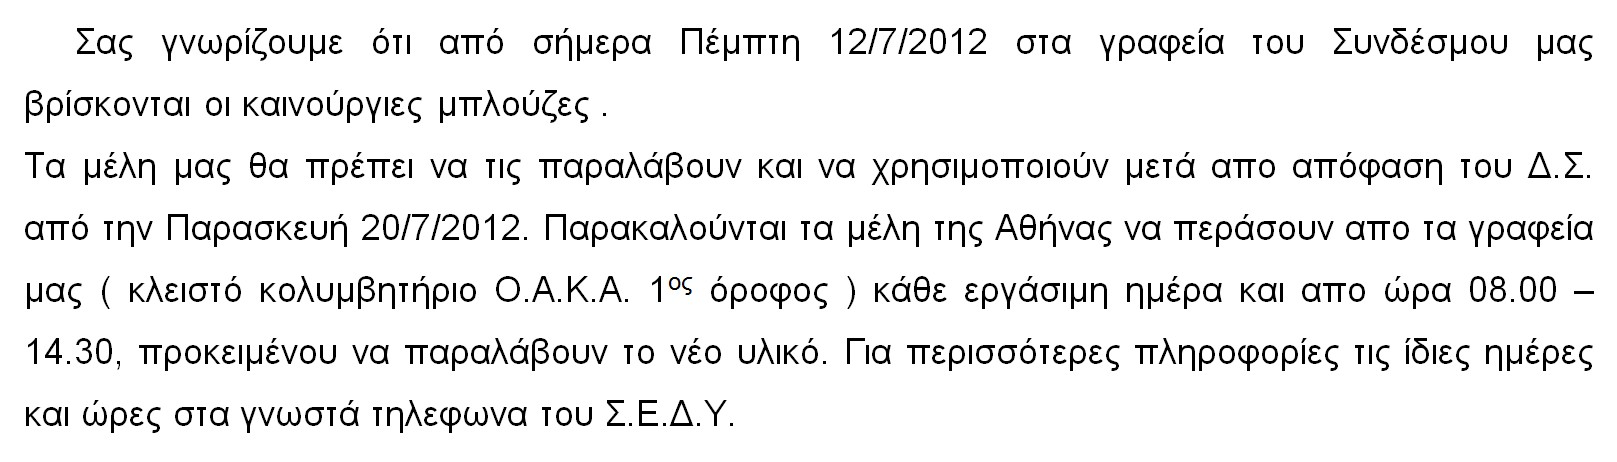 ENHMEROTIKO_12.7.2012